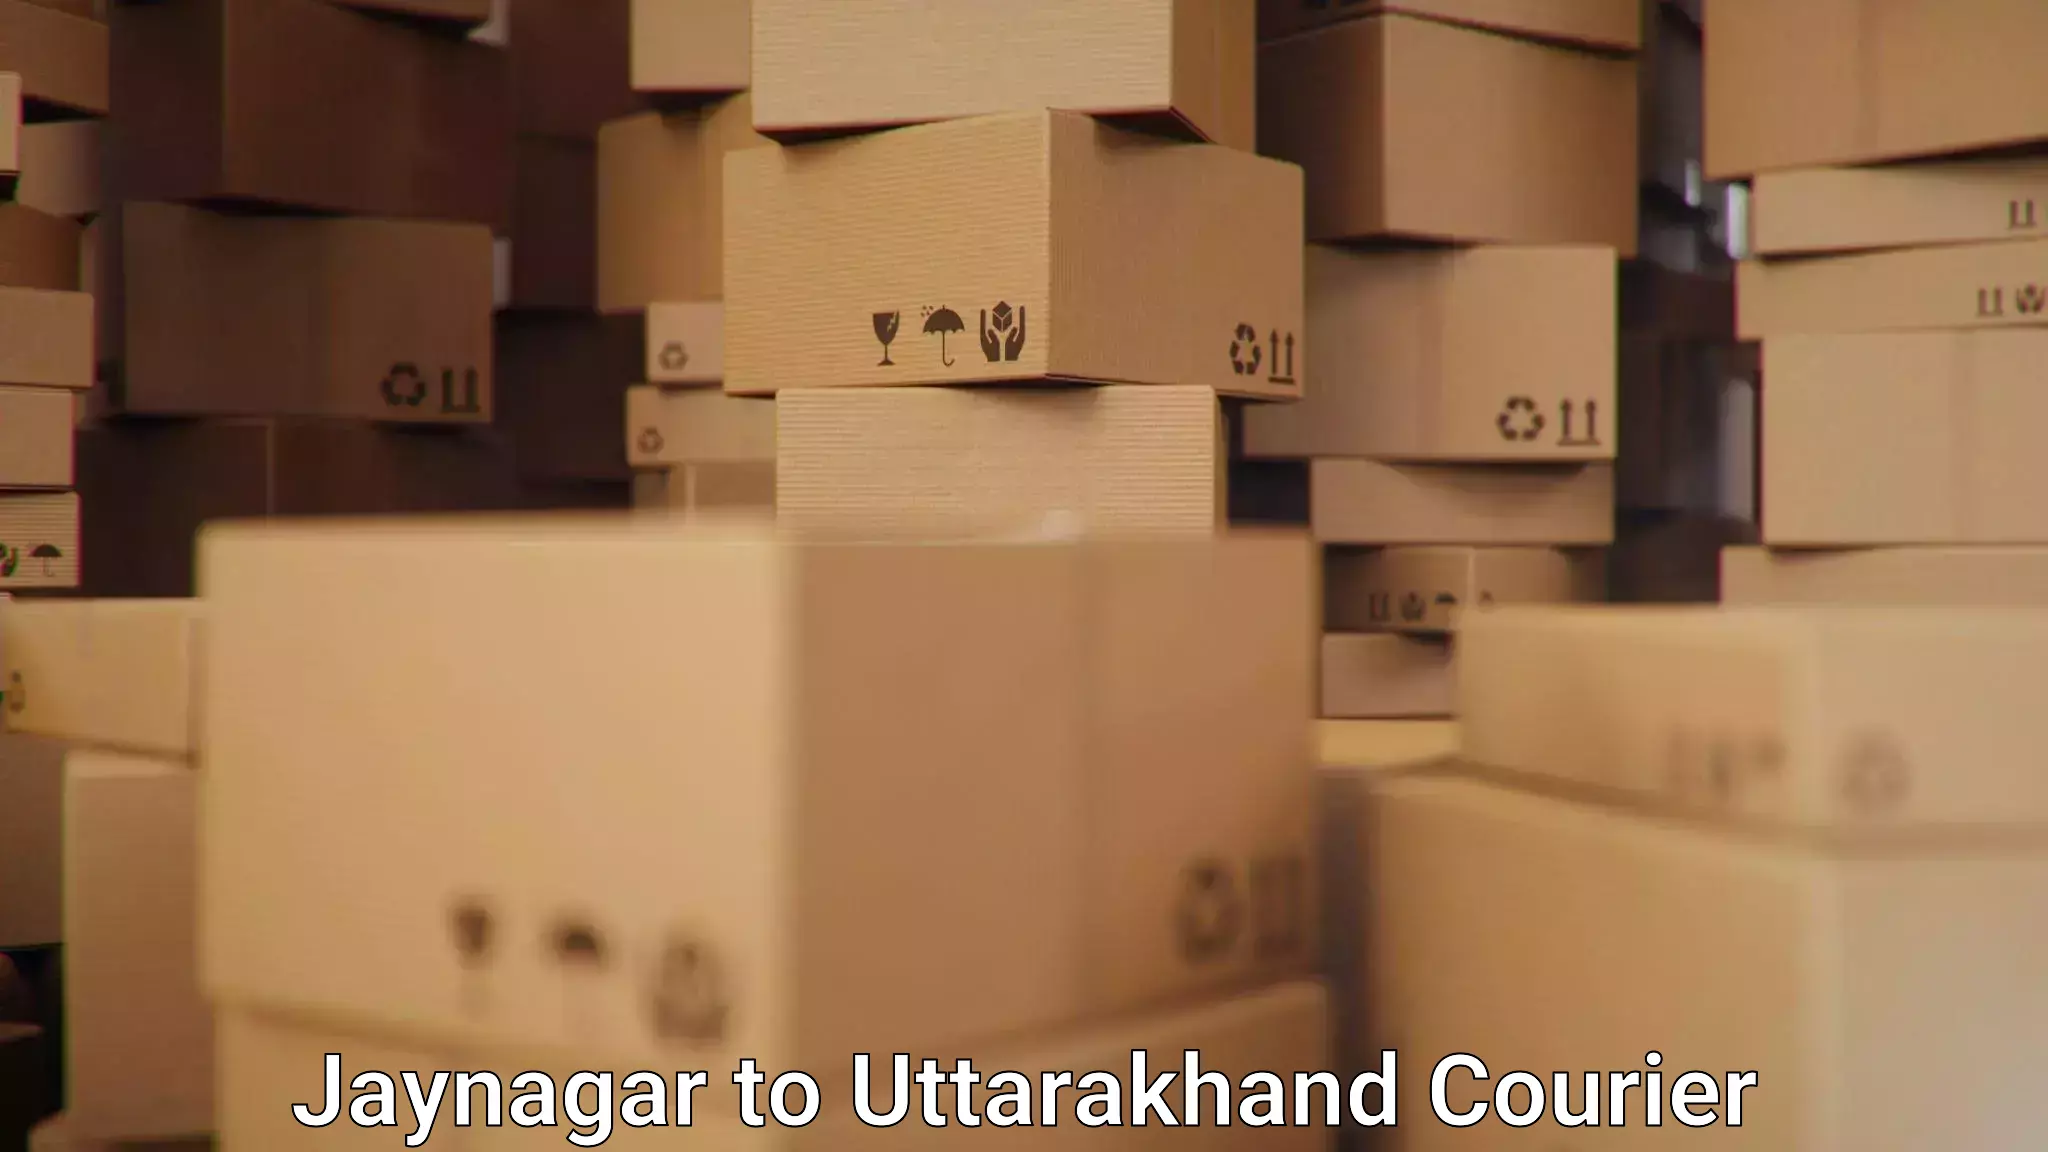 Fast shipping solutions Jaynagar to Uttarakhand